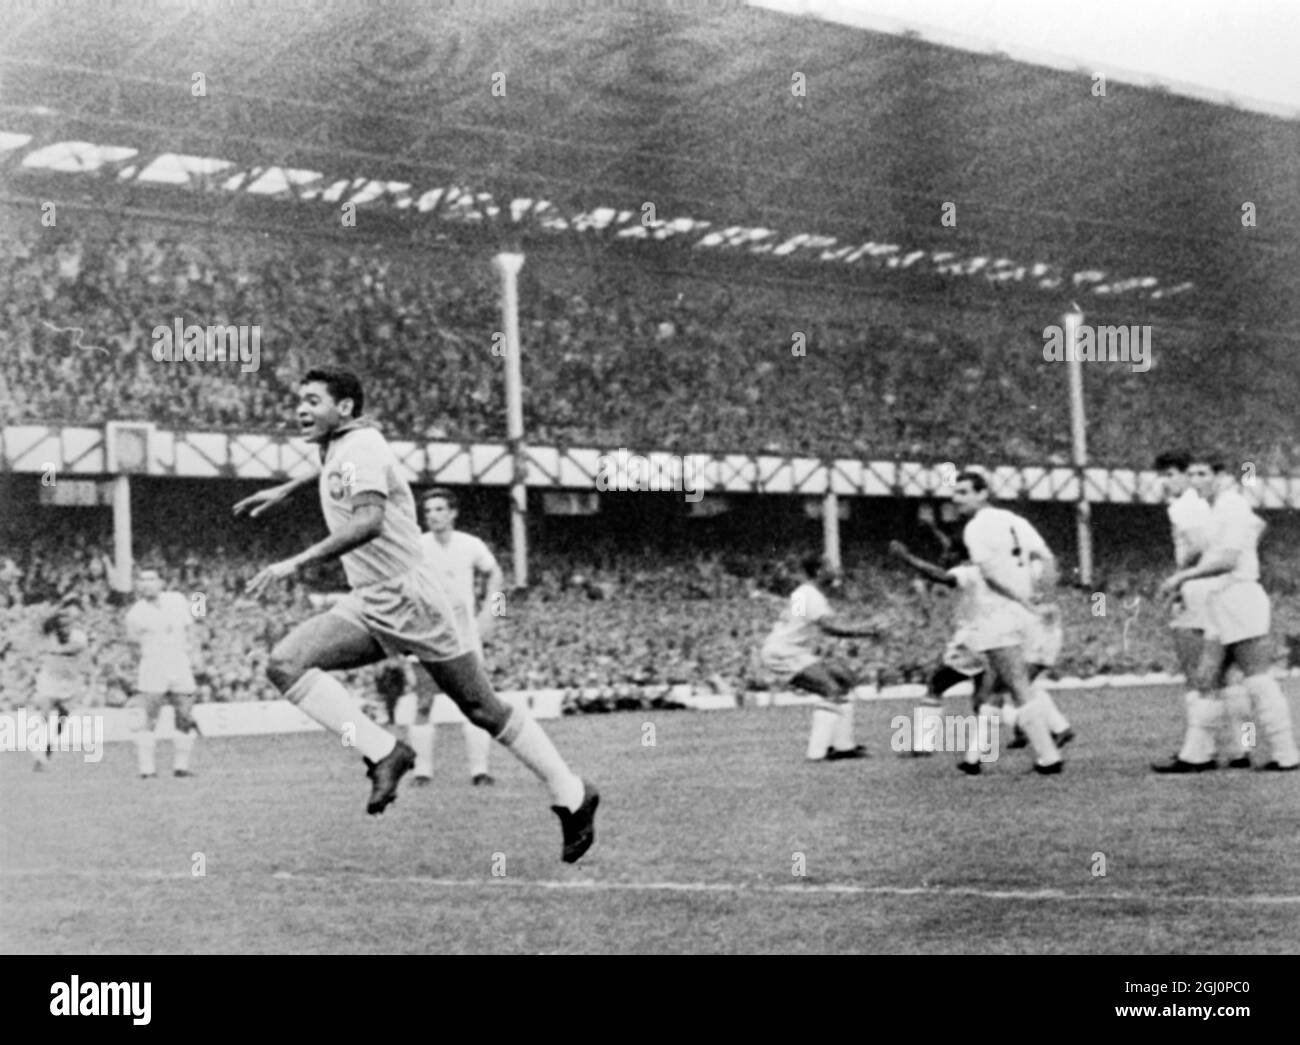 Le premier but du Brésil , et les Brésiliens jubilants , avec leur joueur Garrincha (à gauche) se précipitent vers l'avant , regardés par des Bulgares à la fois blanches et découragés , Goodison Park , Liverpool , Angleterre , domicile du club de football d'Everton à Liverpool . Le Brésil a battu la Bulgarie deux buts à zéro ce soir dans le jeu d'ouverture du groupe trois jouer au championnat du monde de football . Pele et Garrincha ont marqué pour le Brésil . 12 juillet 1966 Banque D'Images